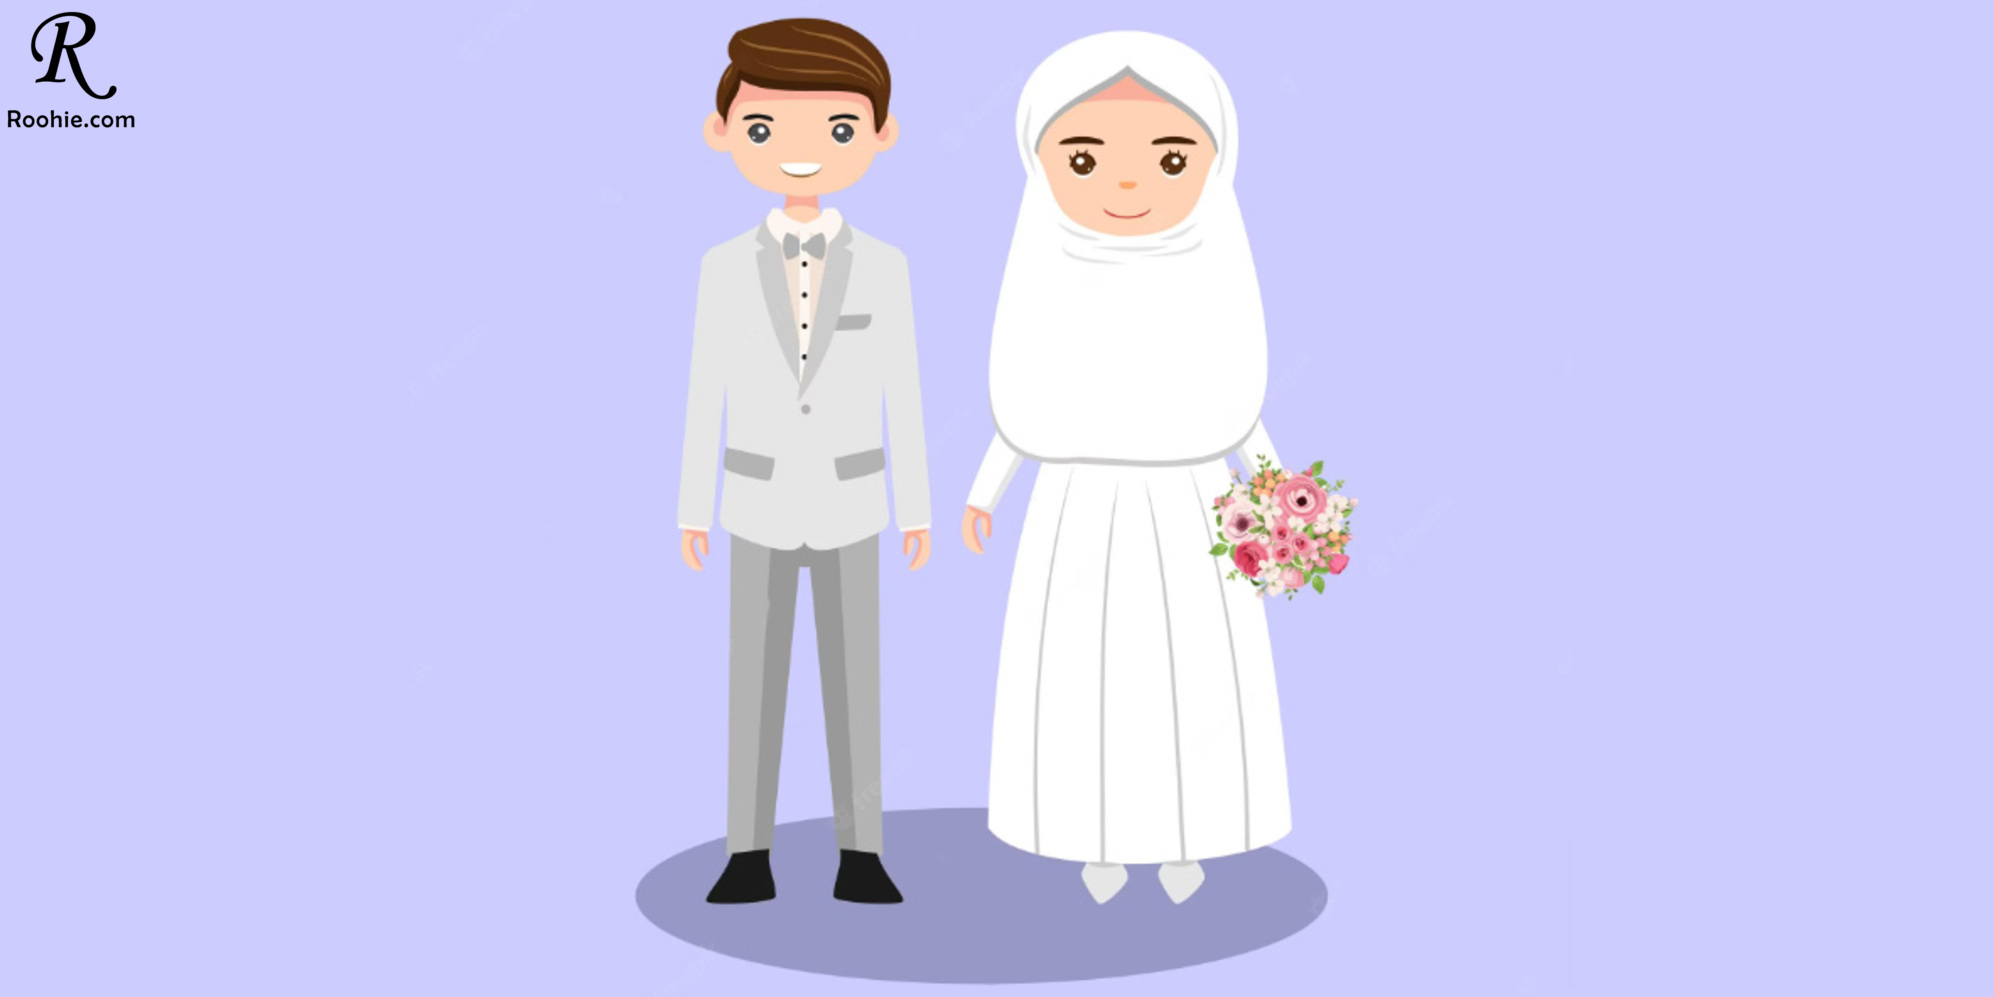 بهترین سایتهای همسریابی و اپلیکیشن های ازدواج در ایران